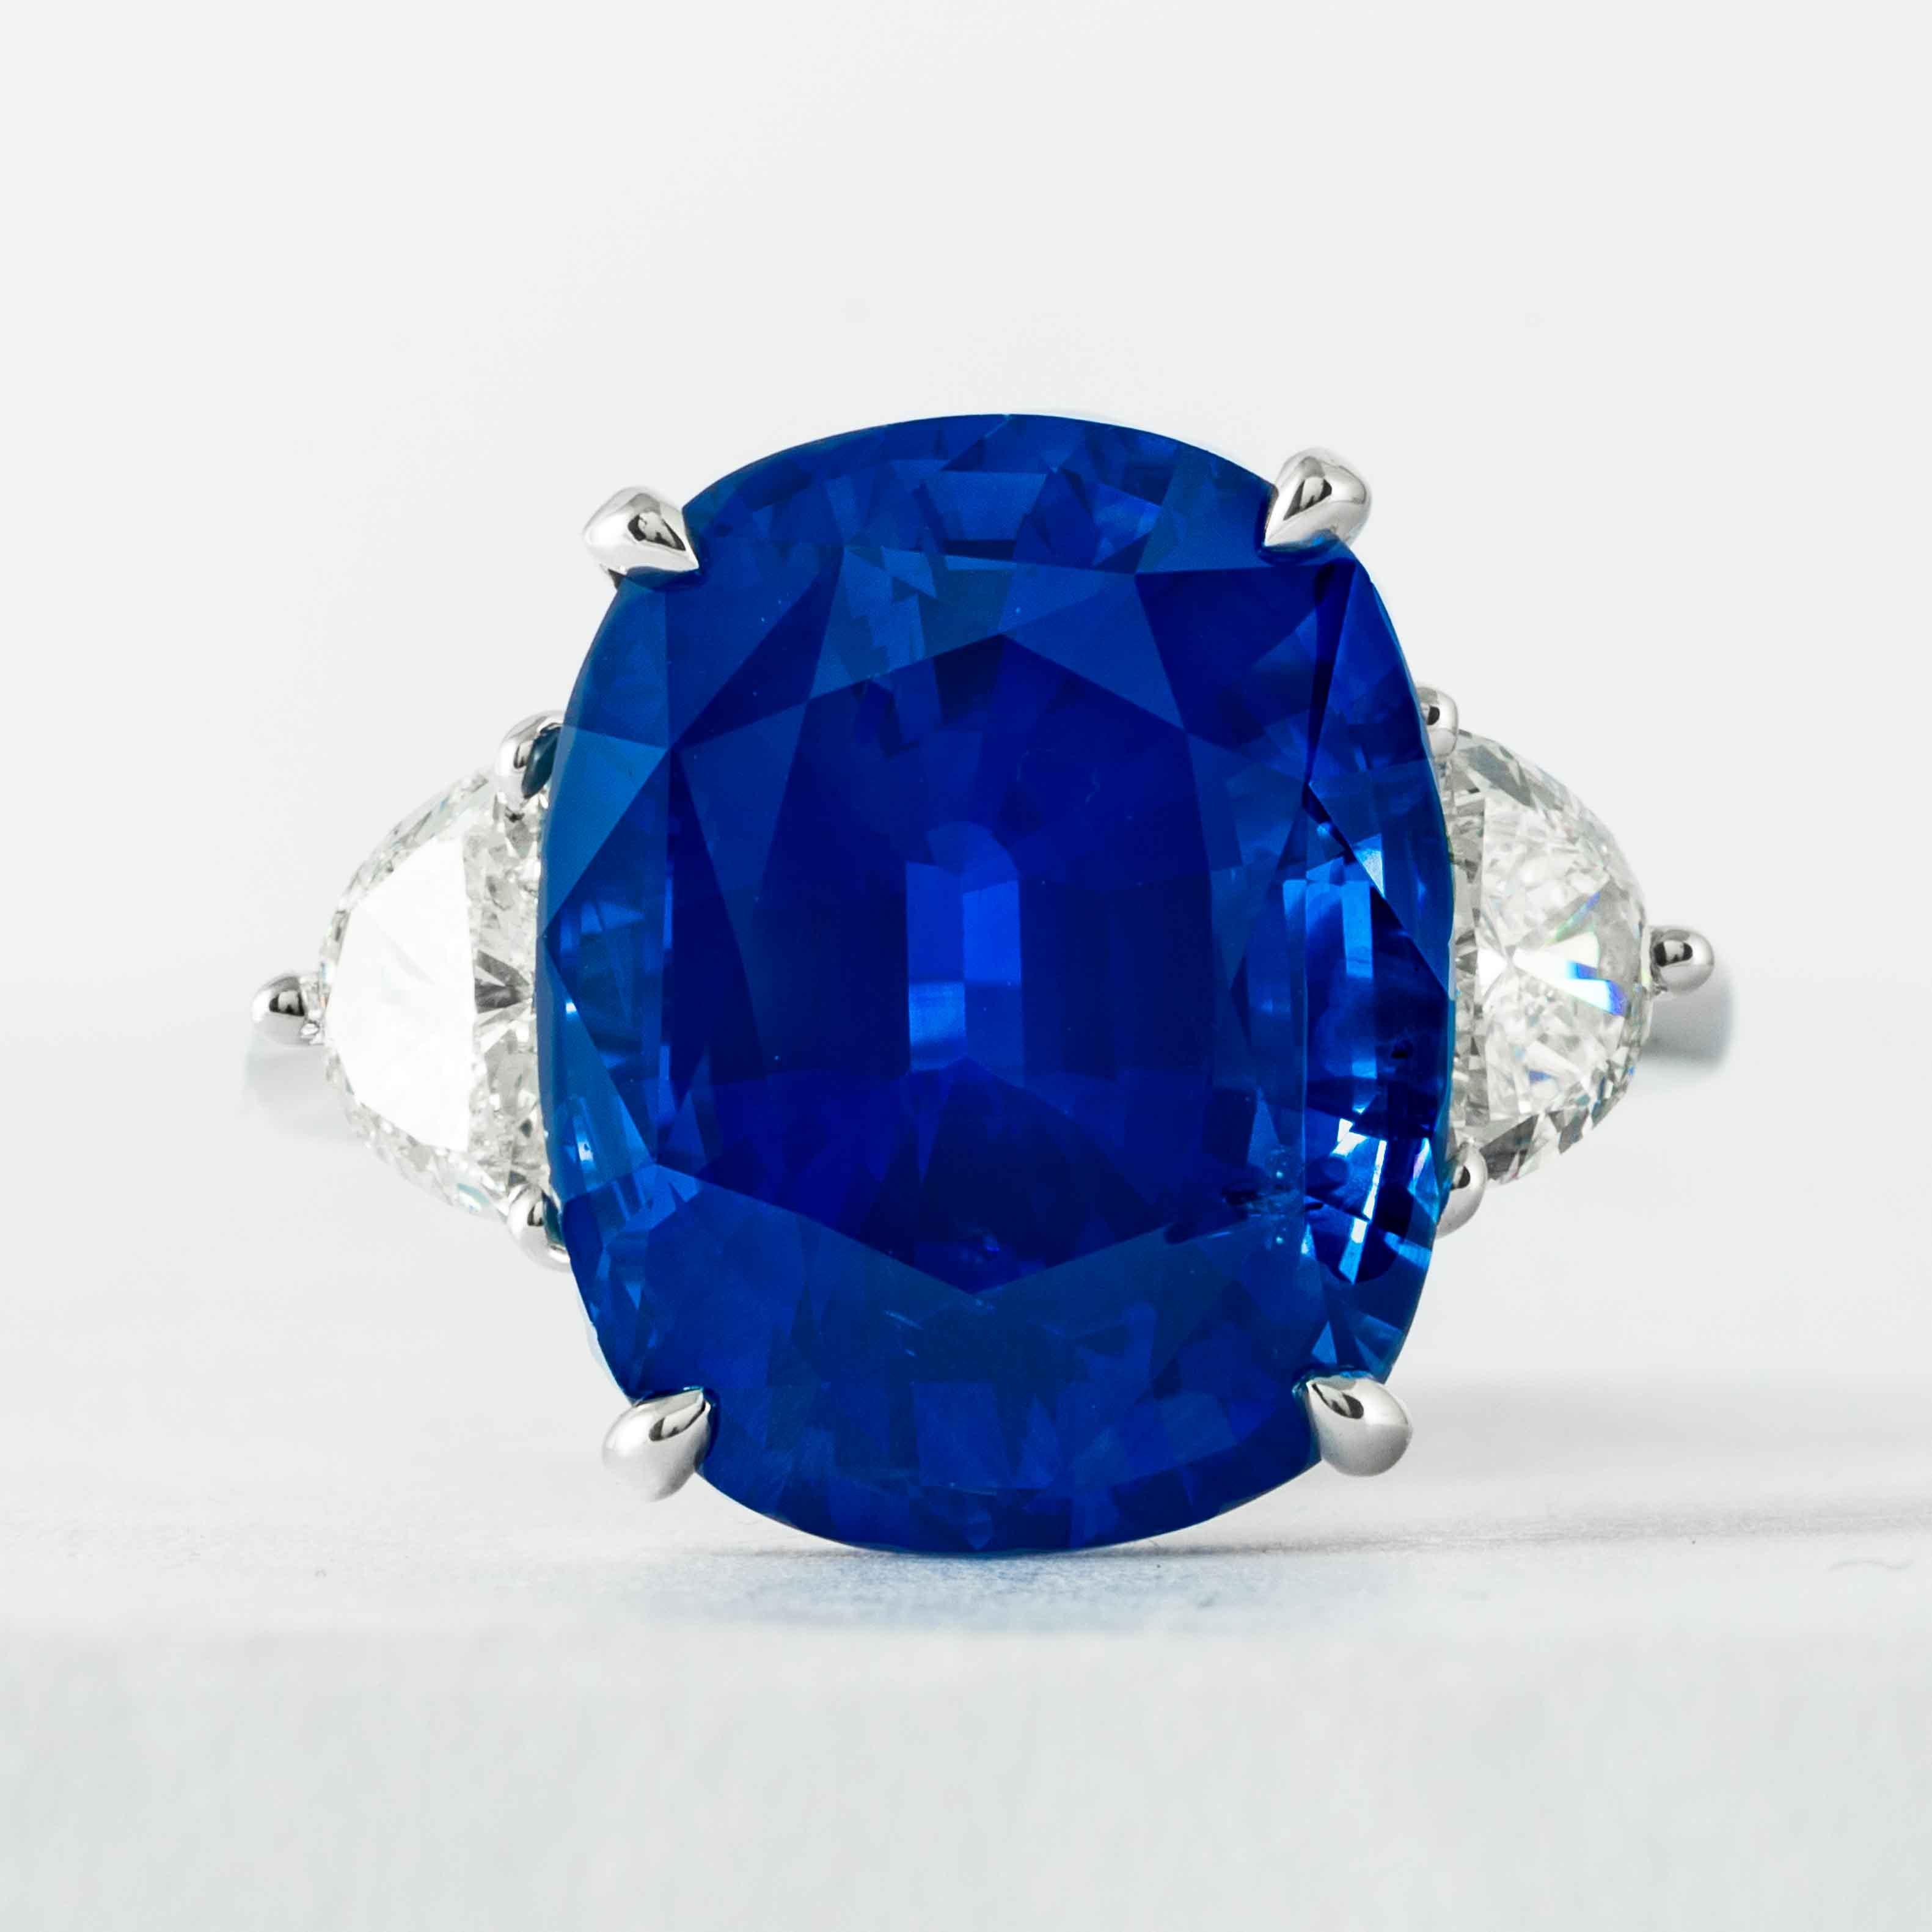 Dieser 3-Stein-Ring mit Saphiren und Diamanten wird von Shreve, Crump & Low angeboten.  Dieser blaue, kissenförmig geschliffene Saphir mit den Maßen 15,06 x 12,18 x 8,25 mm ist in einem handgefertigten, einzigartigen 3-Stein-Ring aus Platin von